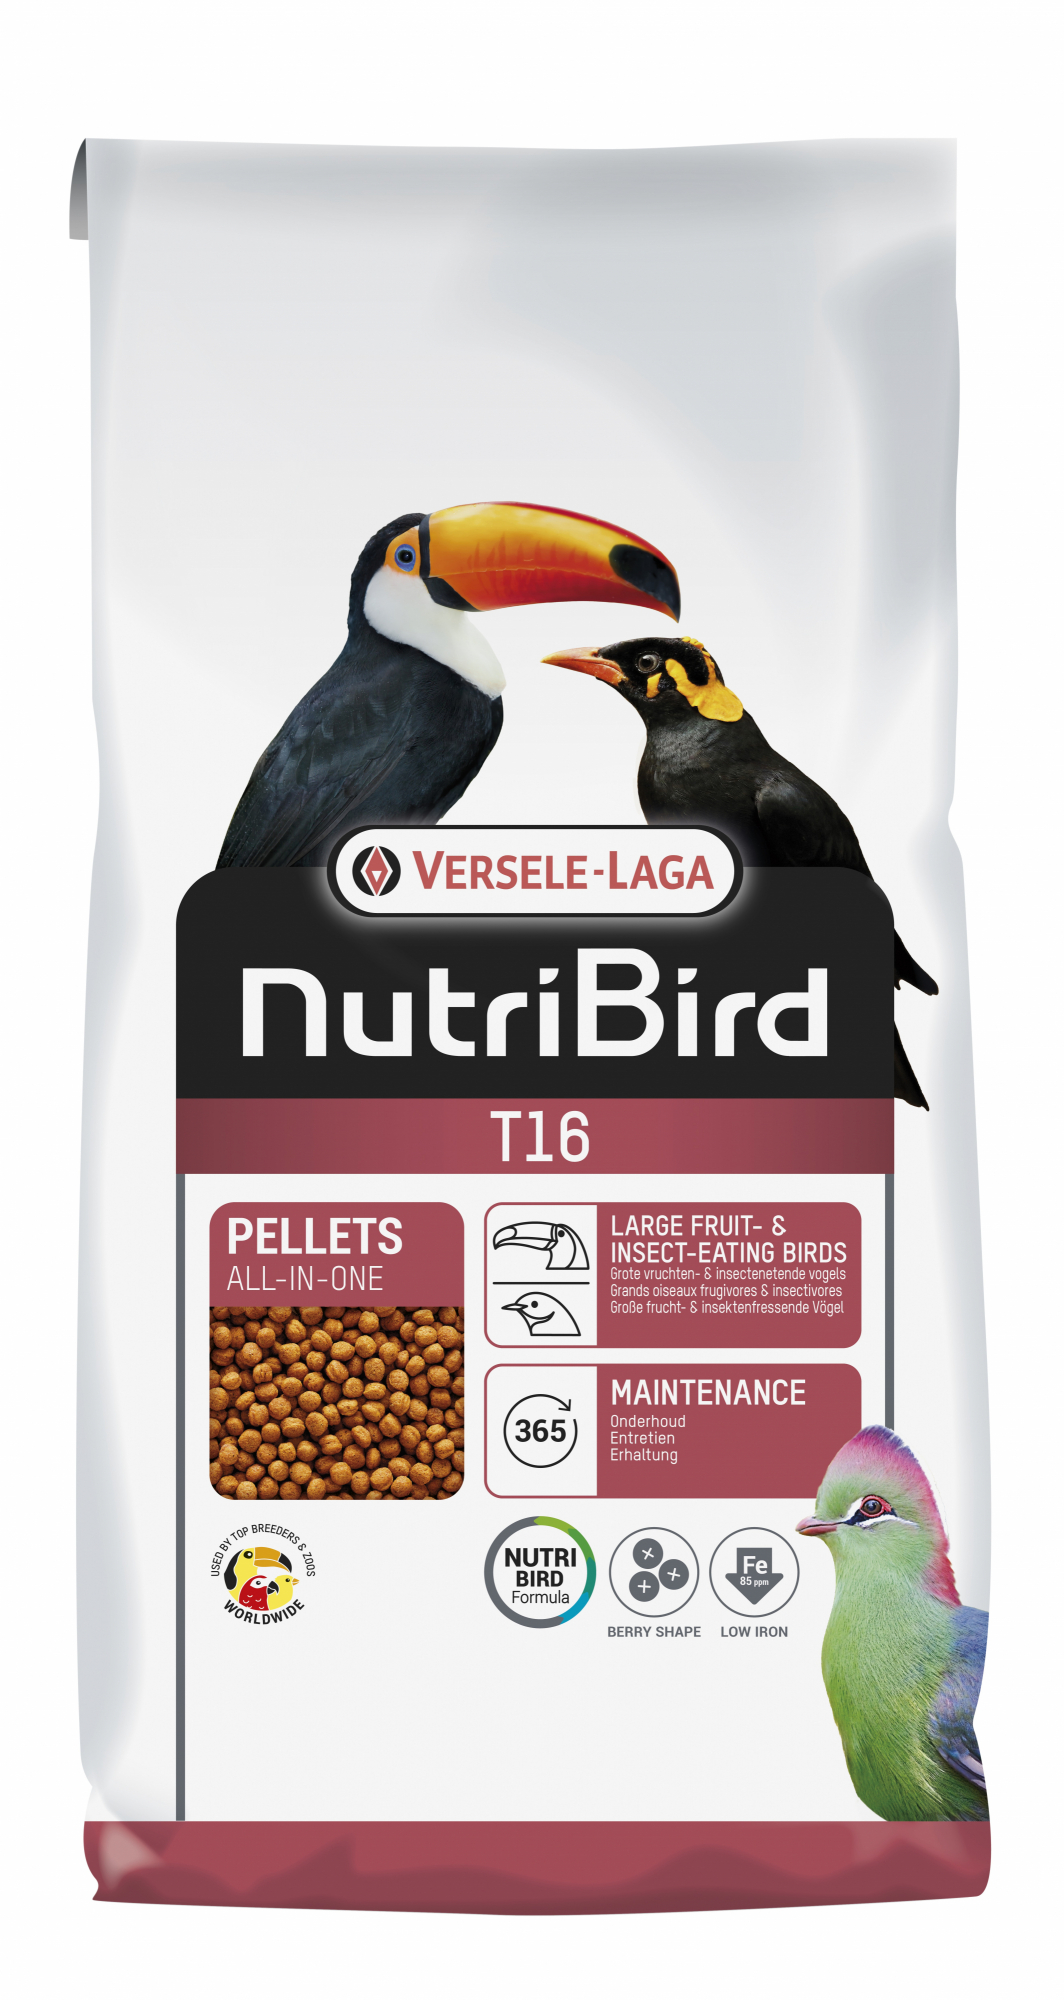 NutriBird T16 Original Comida para tucanes, turacos y otros grandes frugívoros